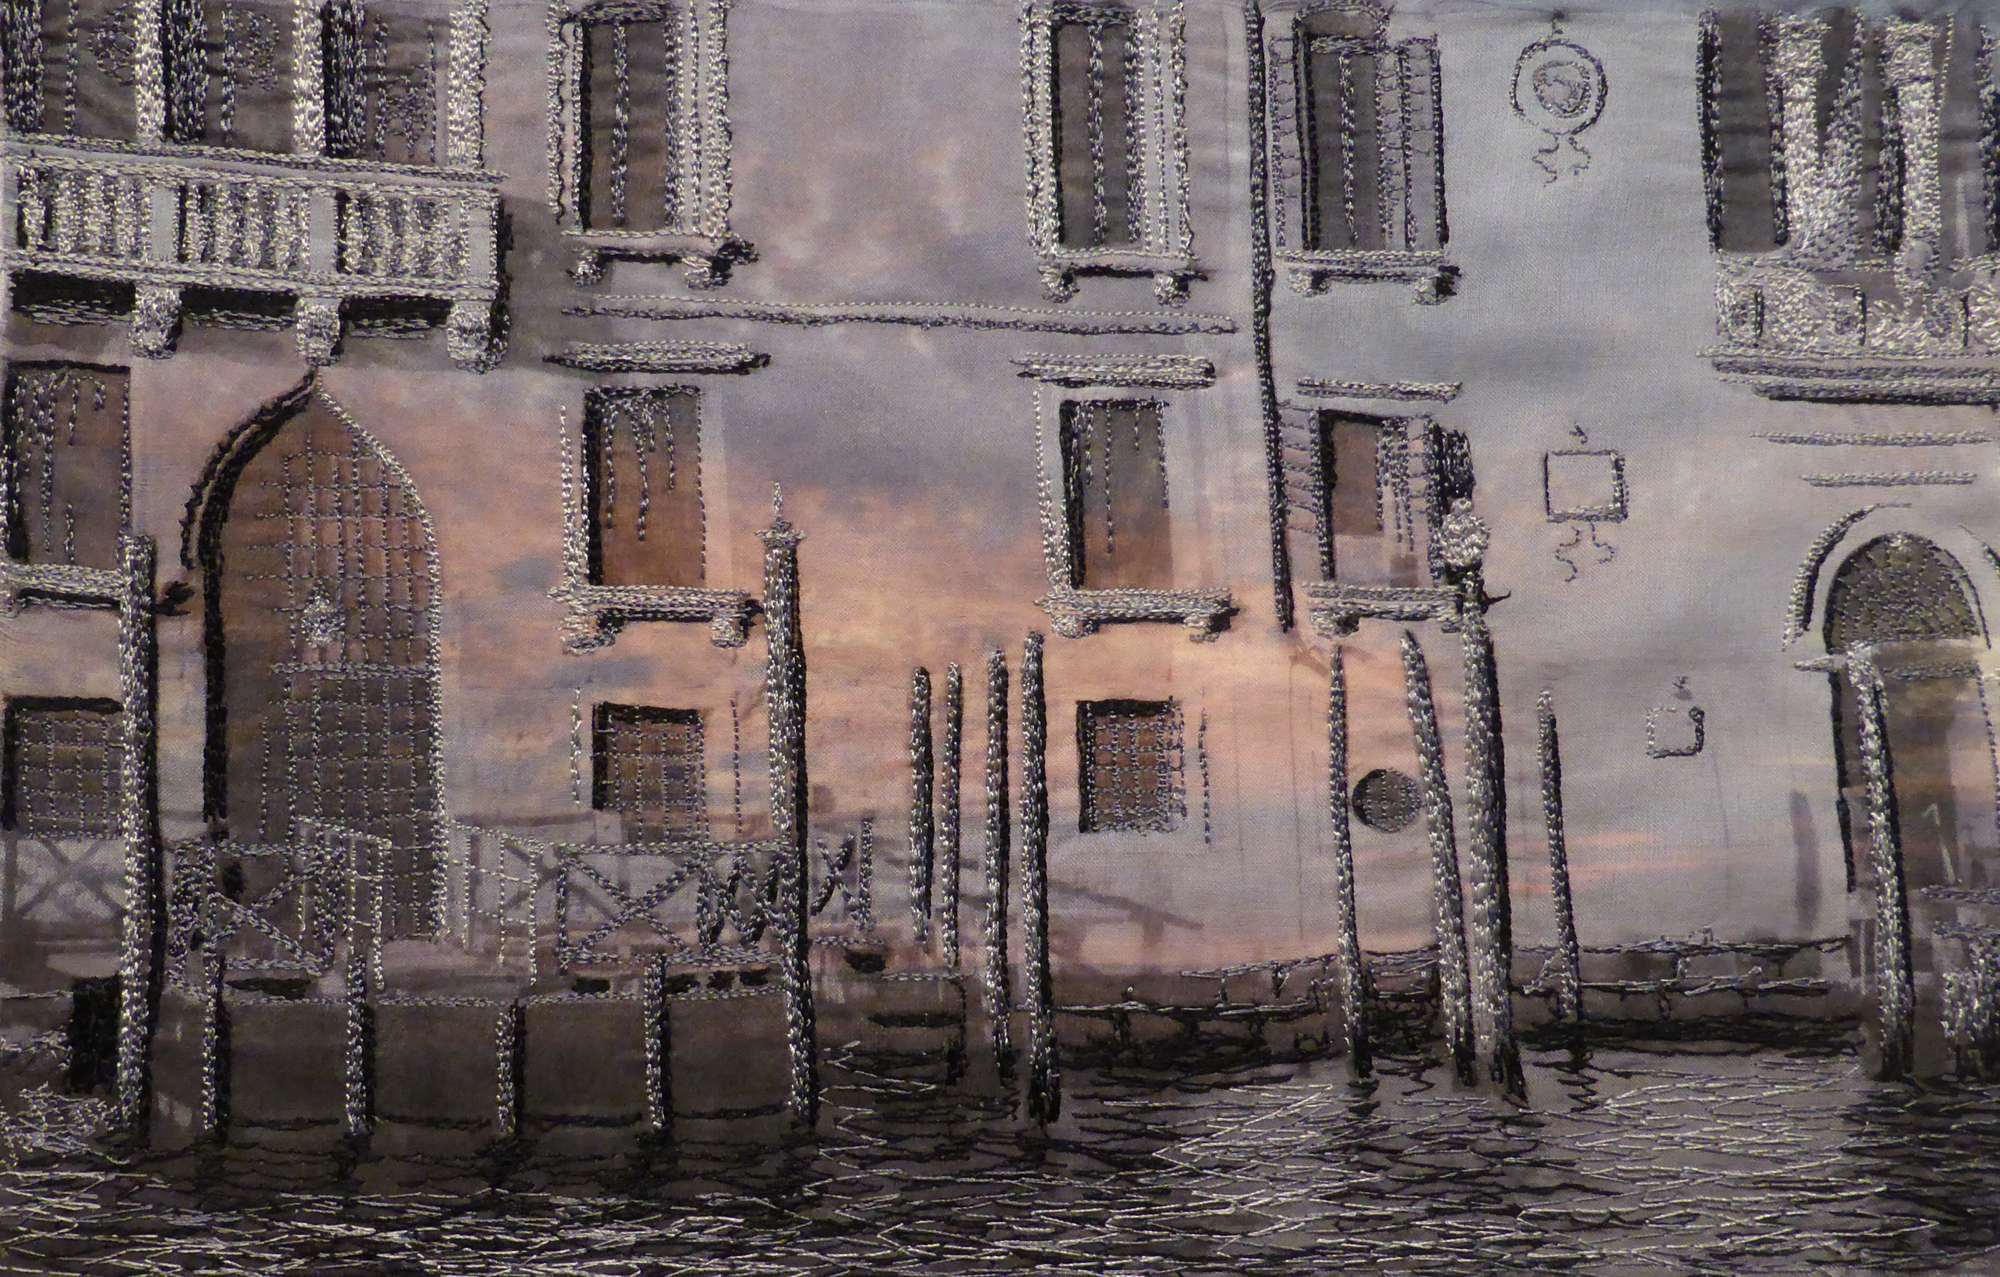 Venice to Broome No 2 by Andrea McCallum